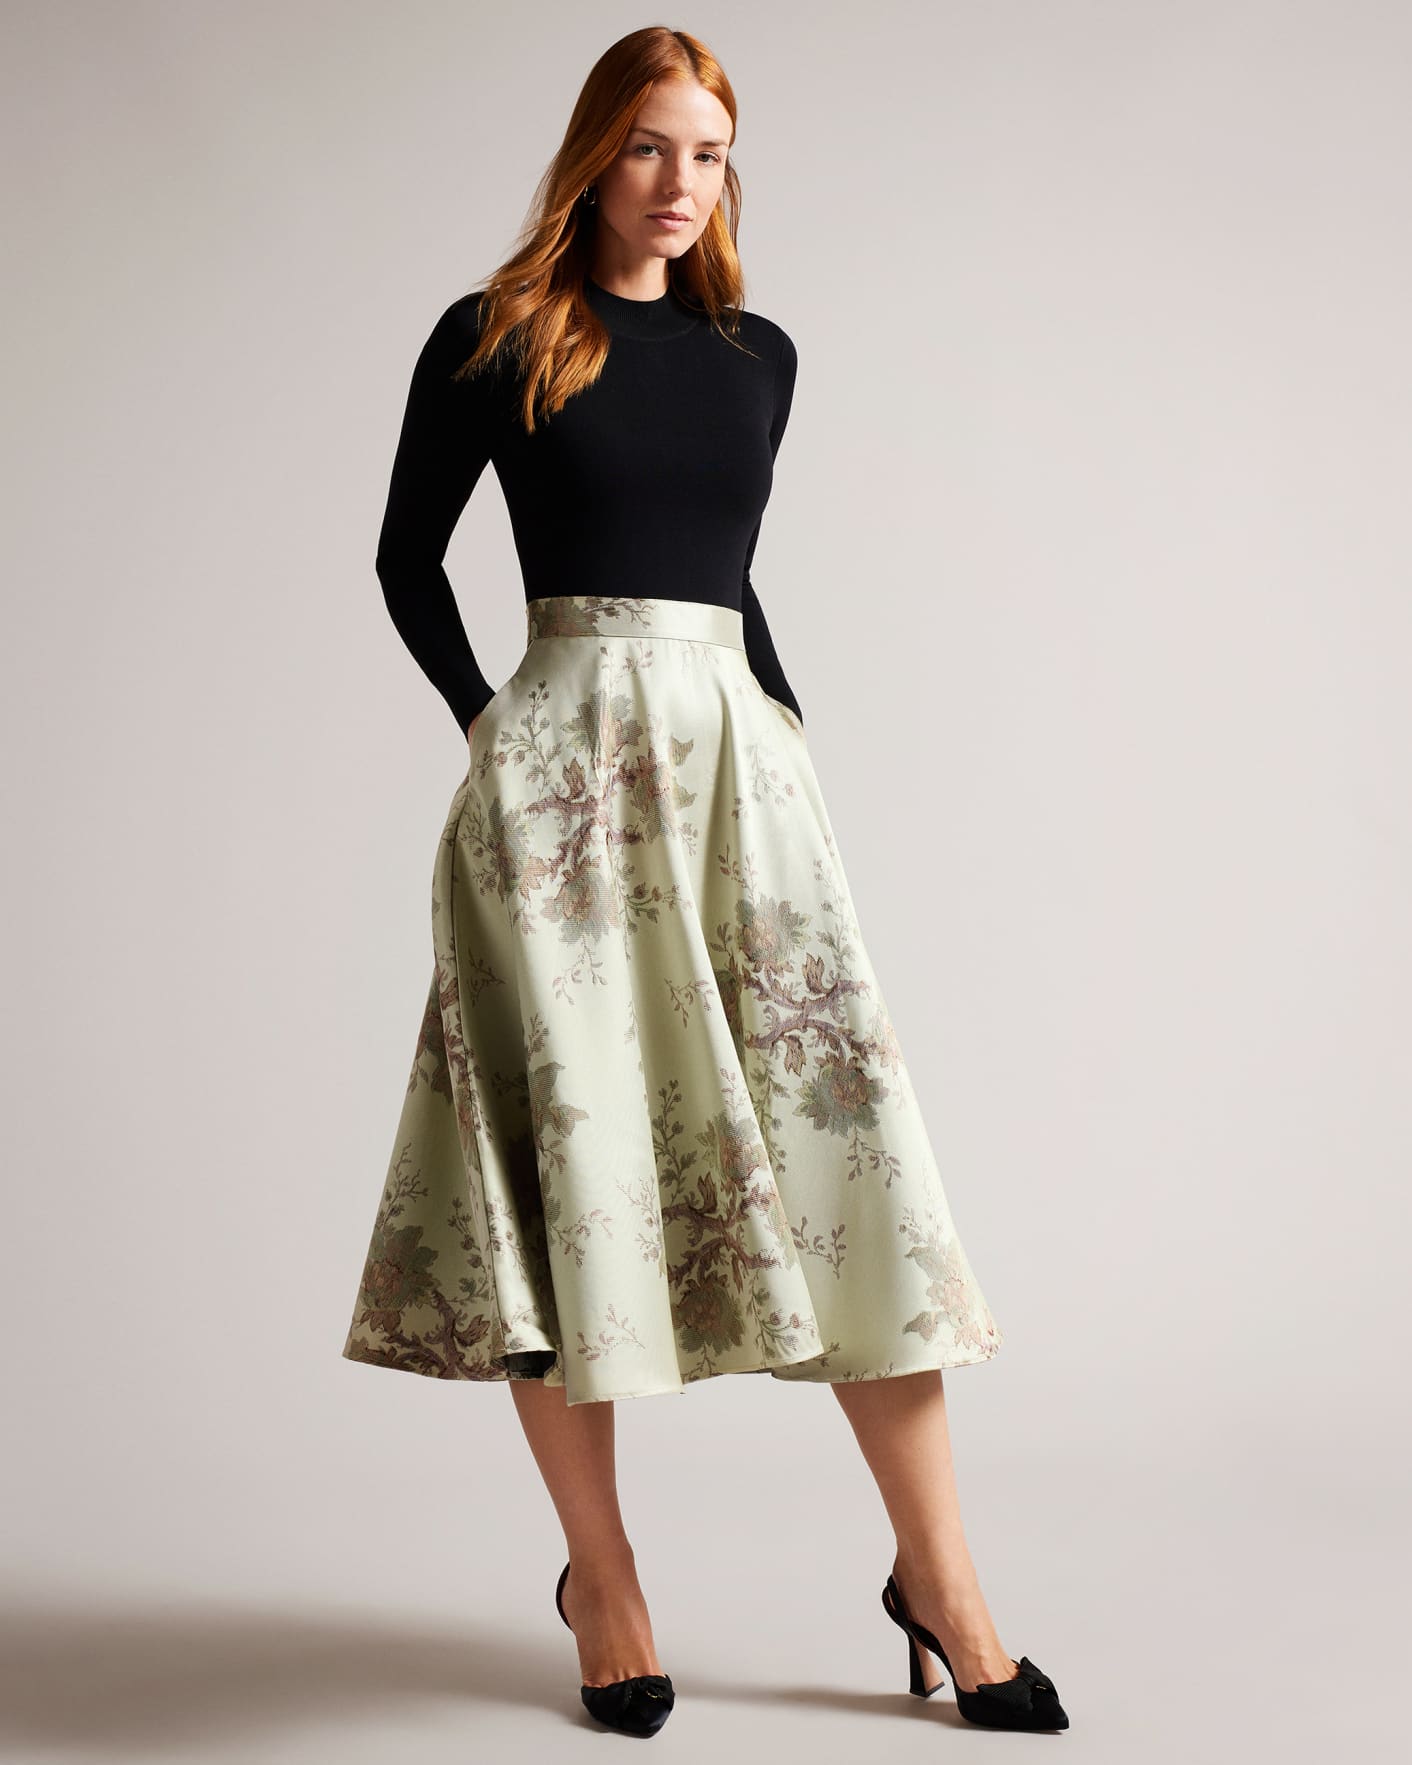 Skirt Midi Dress | vlr.eng.br